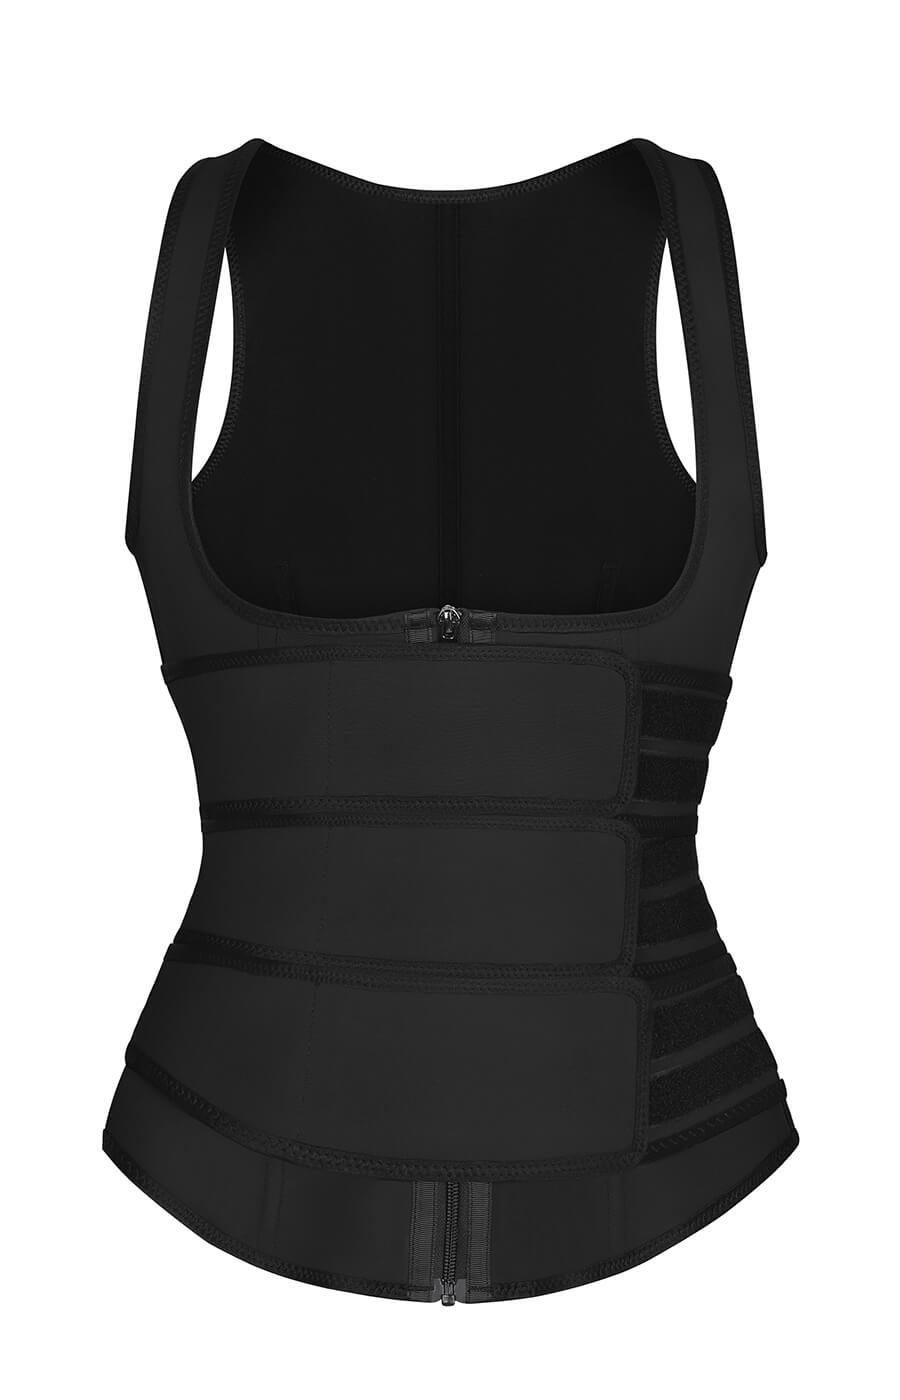 NeoSweat® Sport Vest with Triple Belts